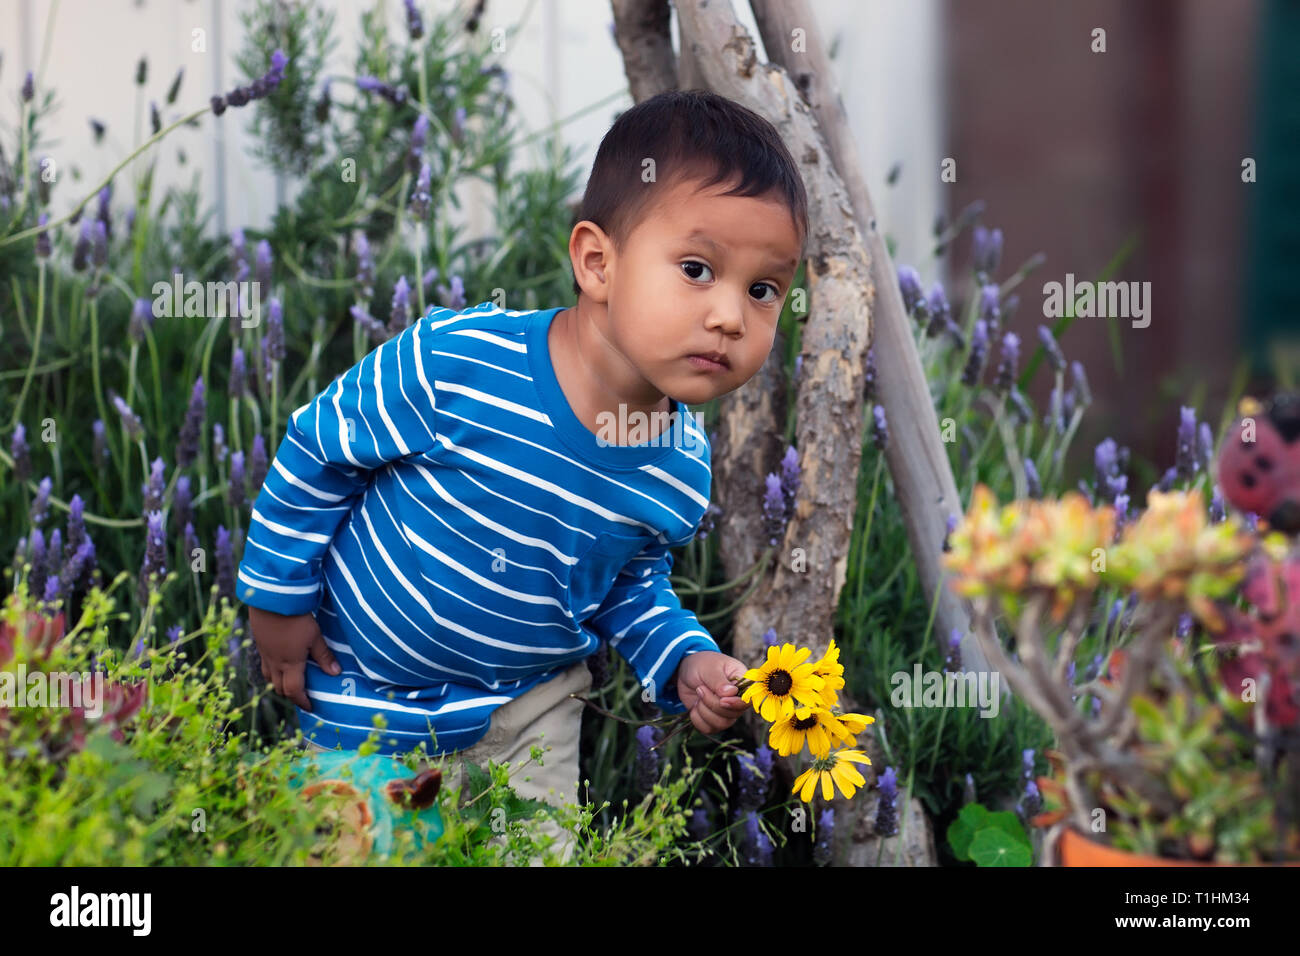 Ein Kleinkind mit einem verdächtigen Ausdruck, die versuchen, sich zu verstecken, während die gepflückten Blumen aus einer üppigen Kalifornien einheimischen Garten. Stockfoto